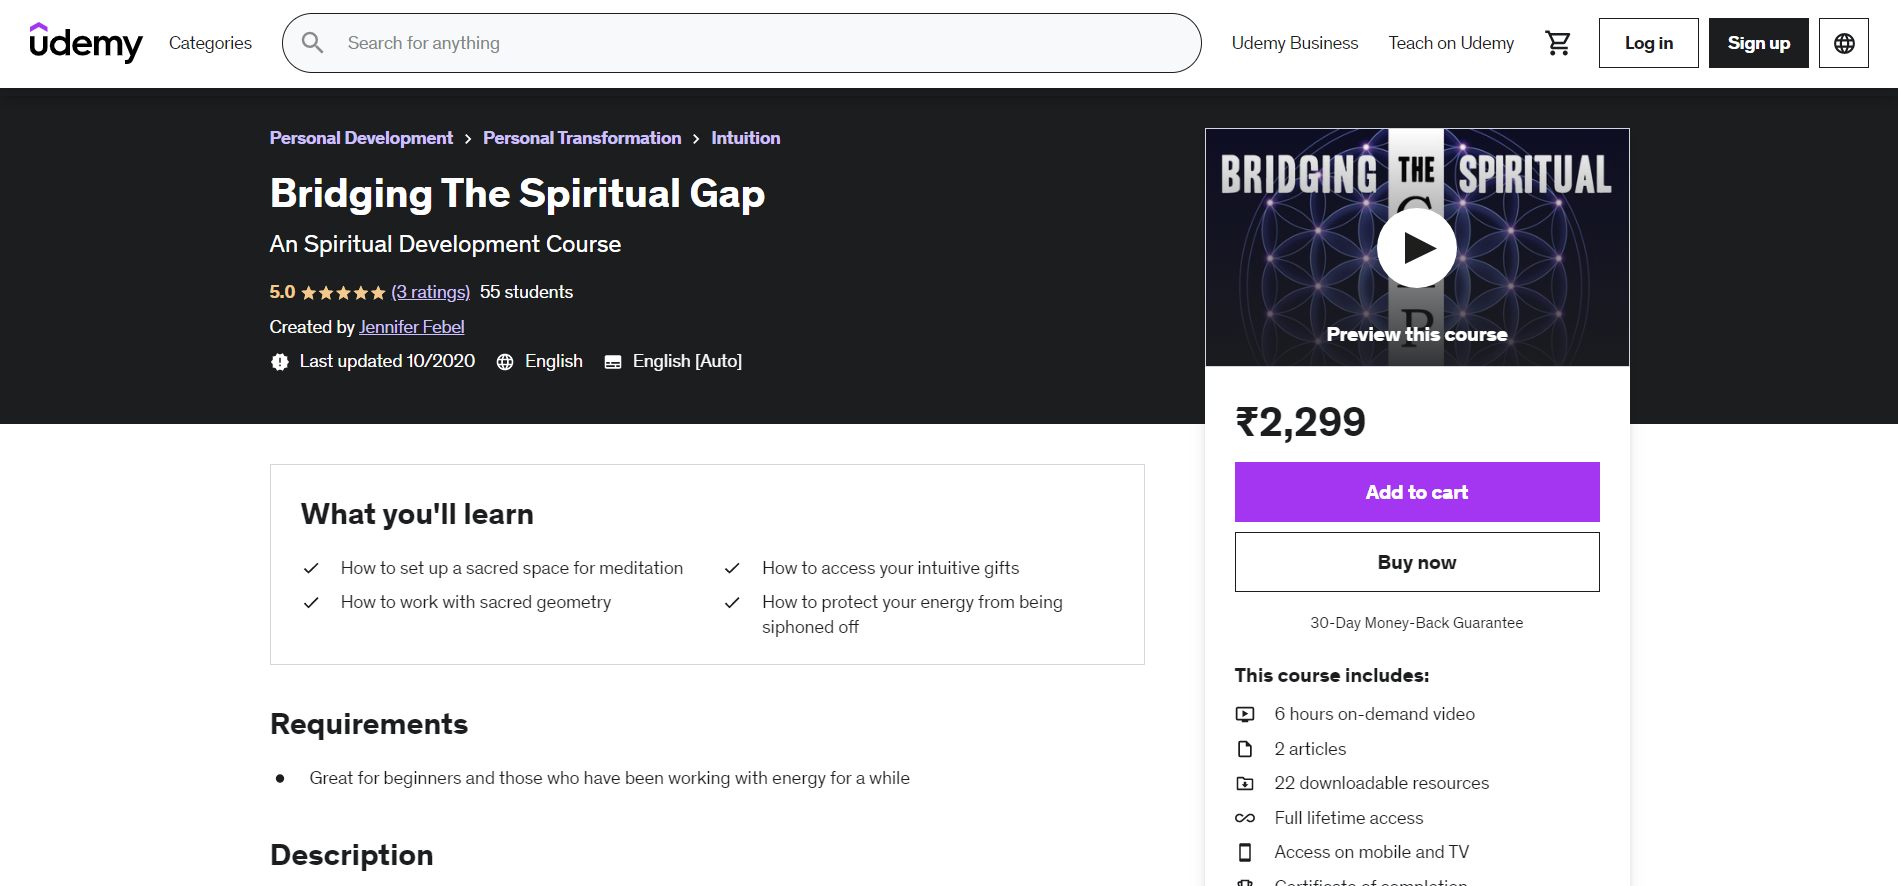 Bridging The Spiritual Gap